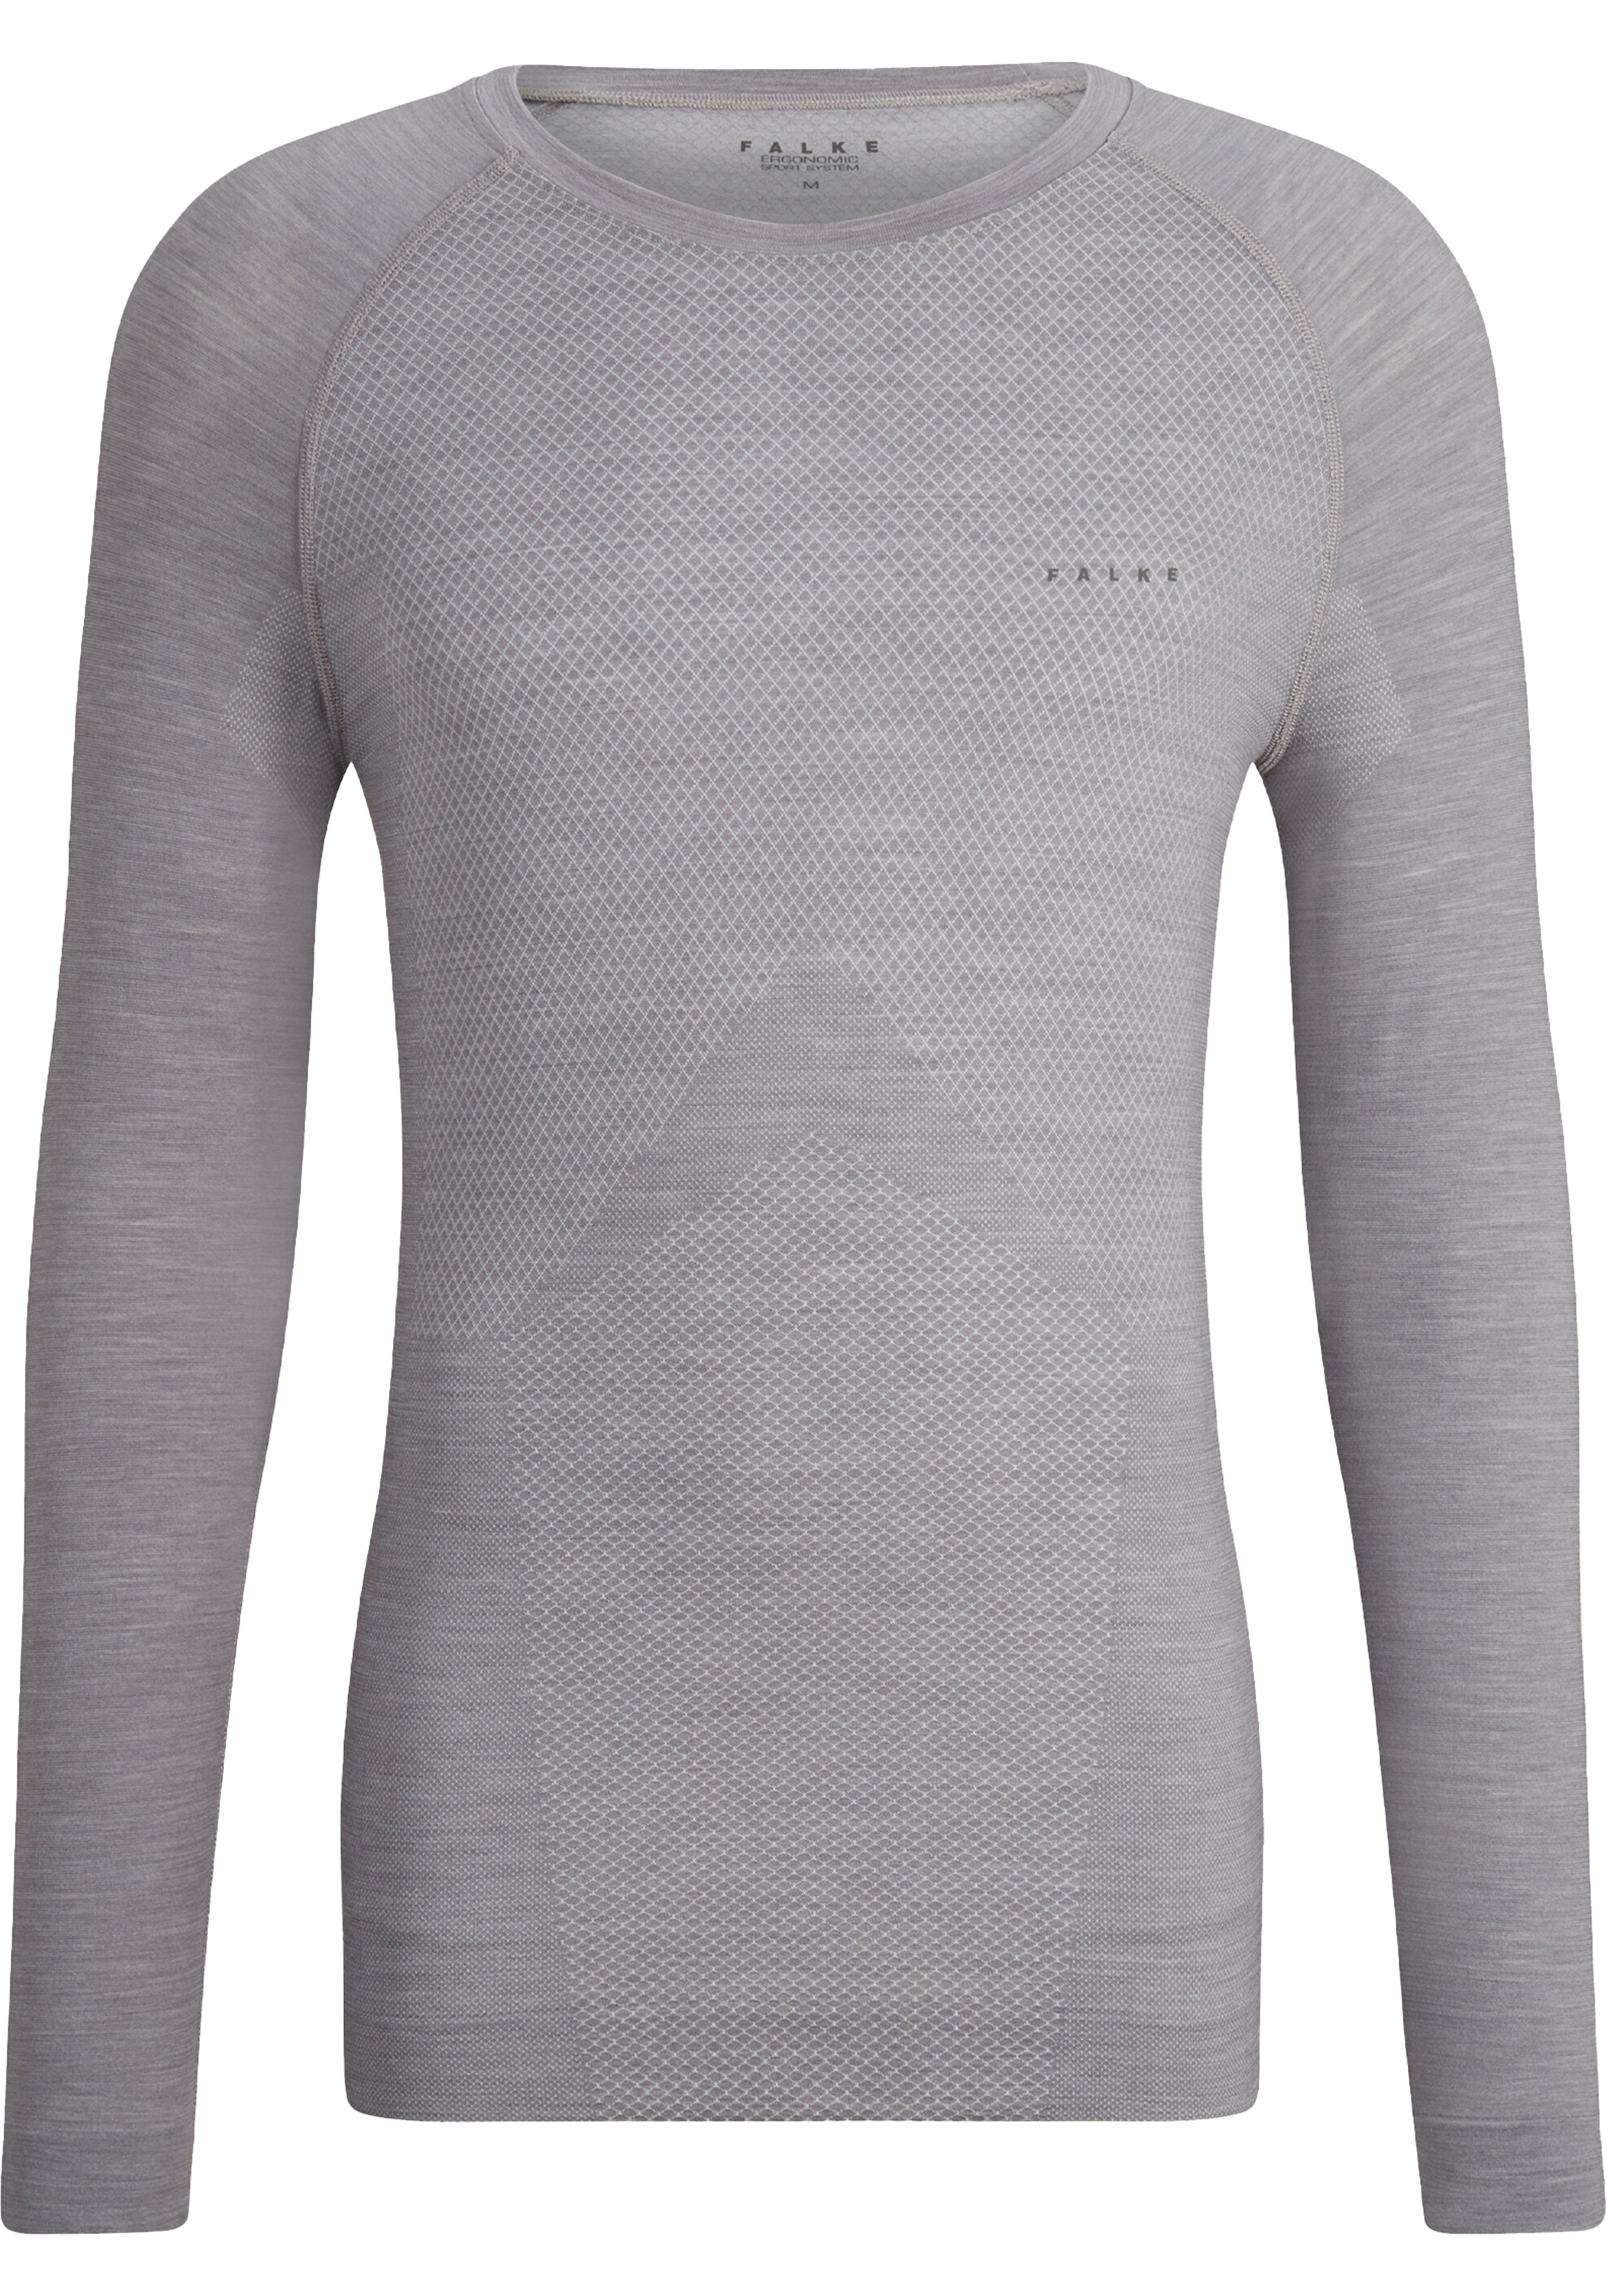 FALKE heren lange mouw shirt Wool-Tech Light, thermoshirt, grijs (grey-heather)